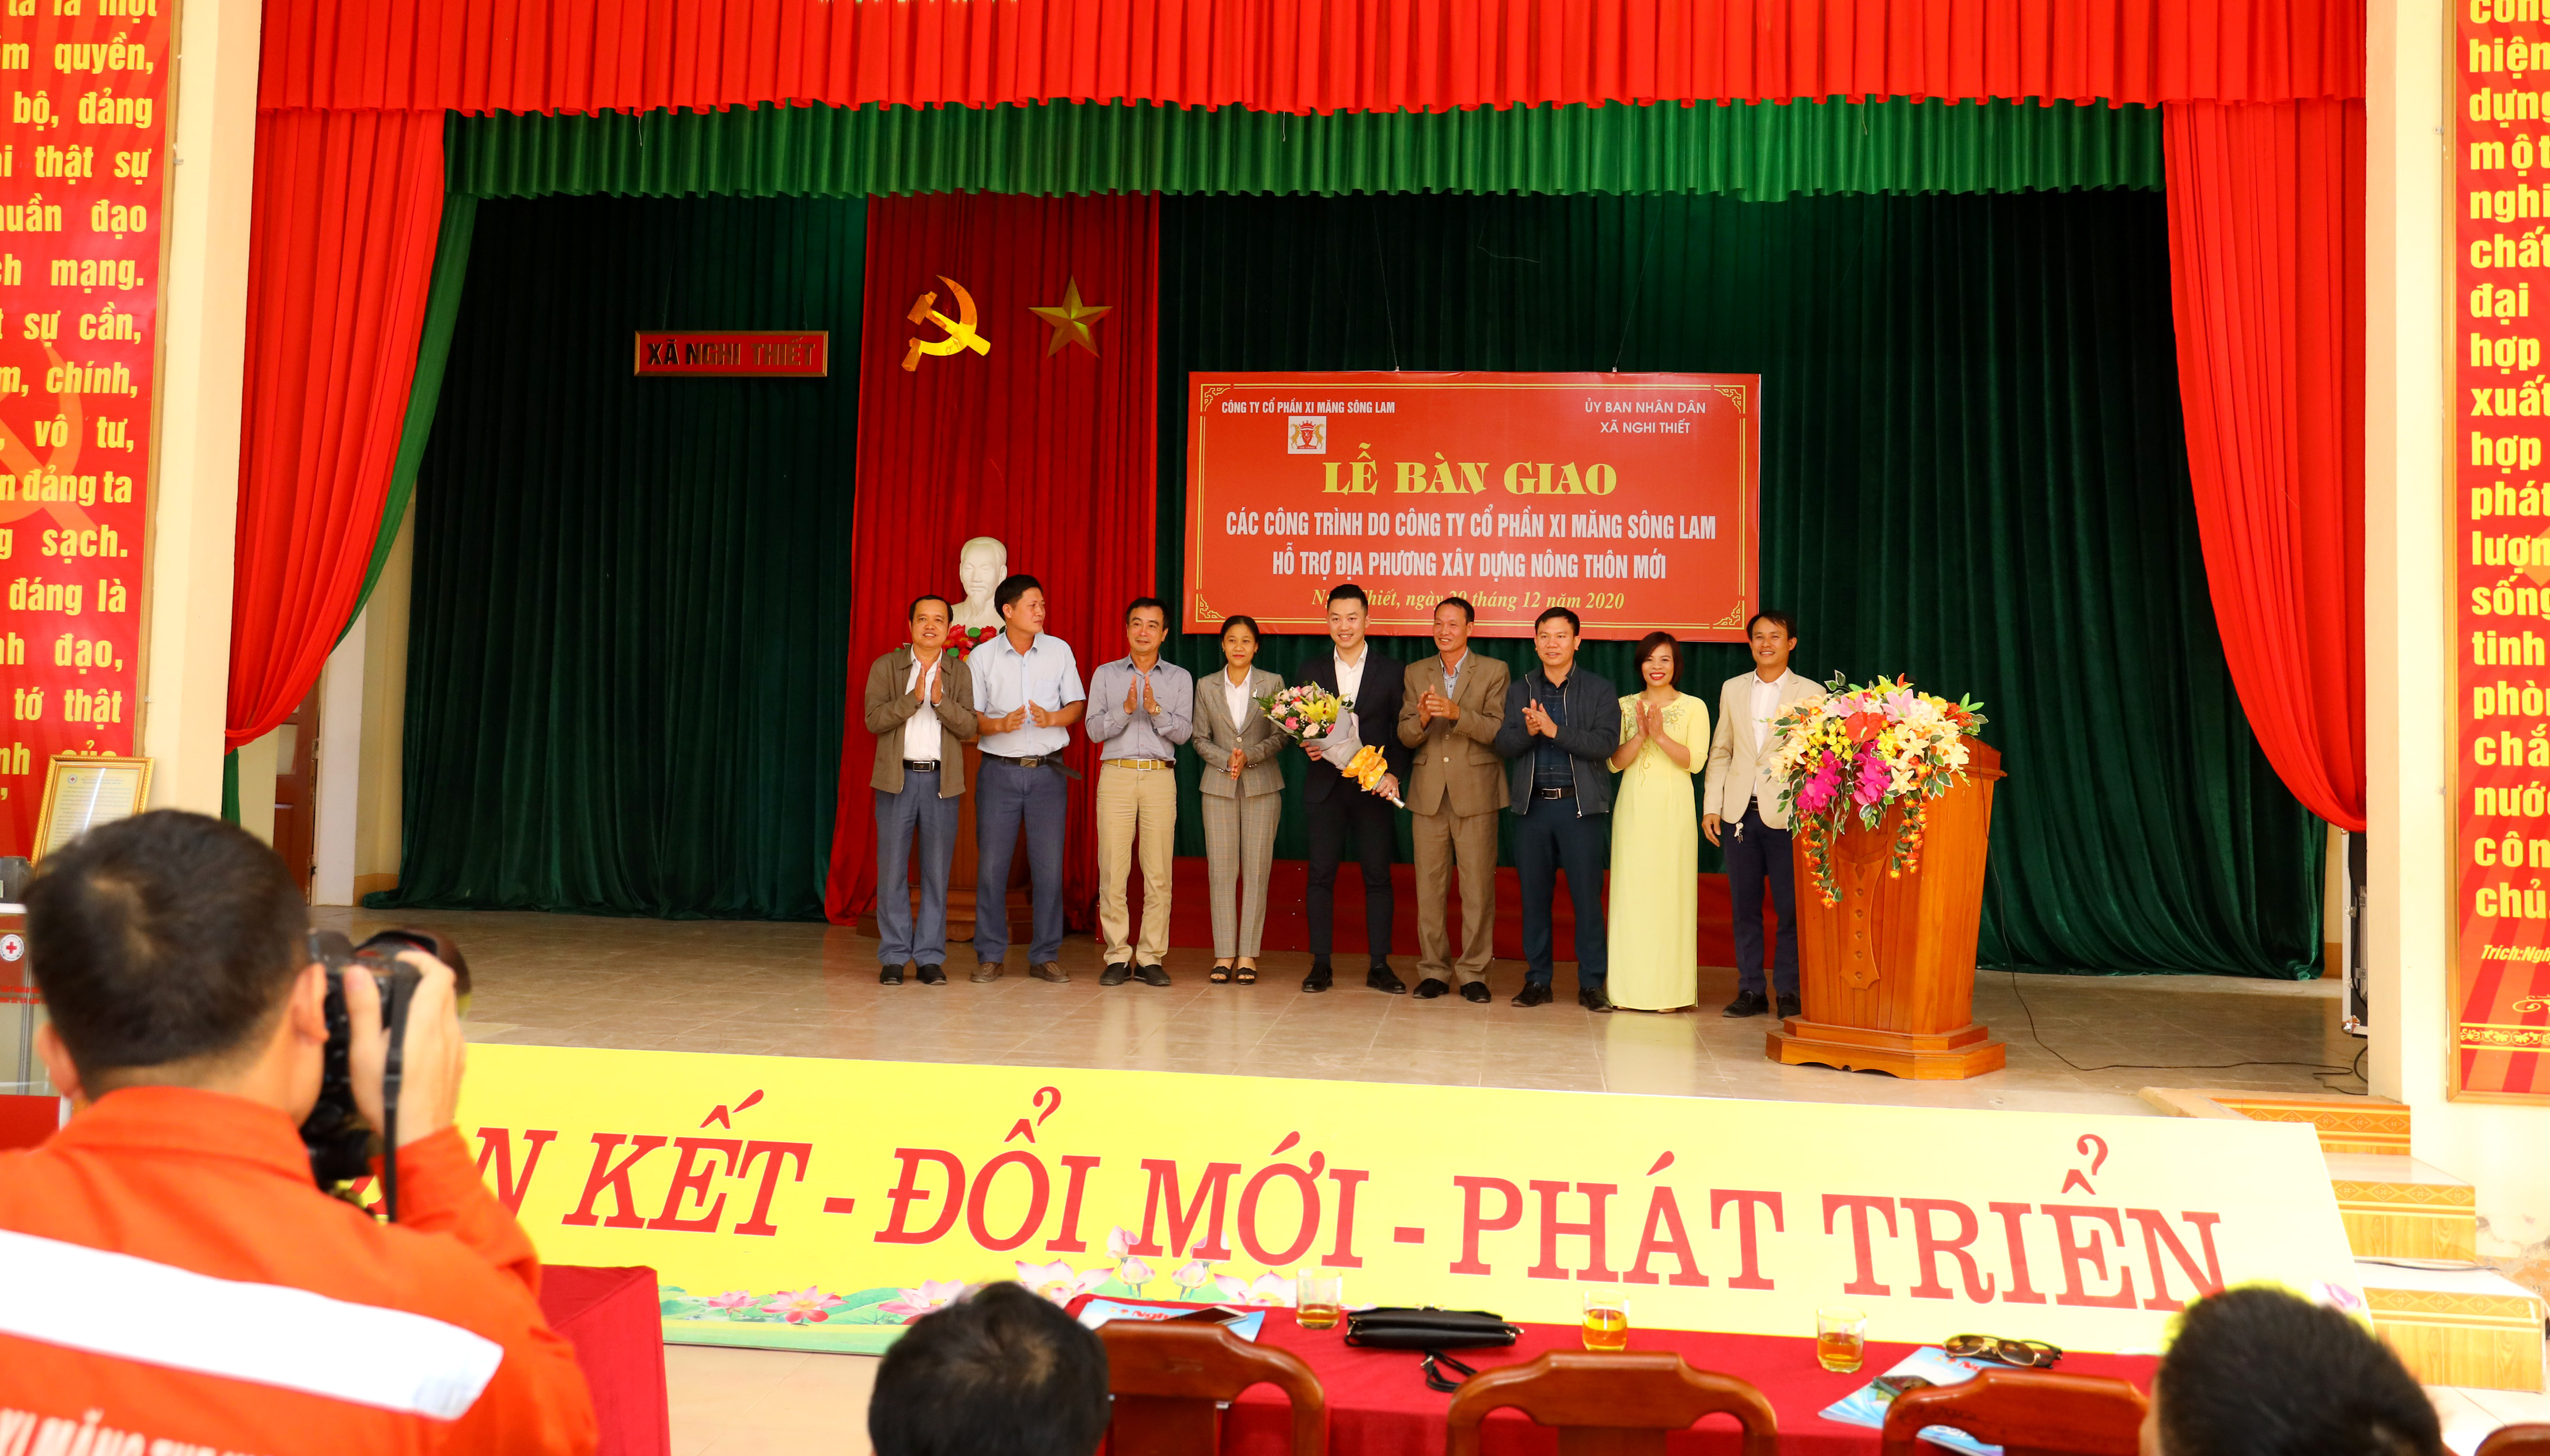 Lãnh đạo xã Nghi Thiết tặng hoa tri ân sự hỗ trợ quý báu đến lãnh đạo Công ty CP Xi măng Sông Lam. Ảnh Nguyên Sơn